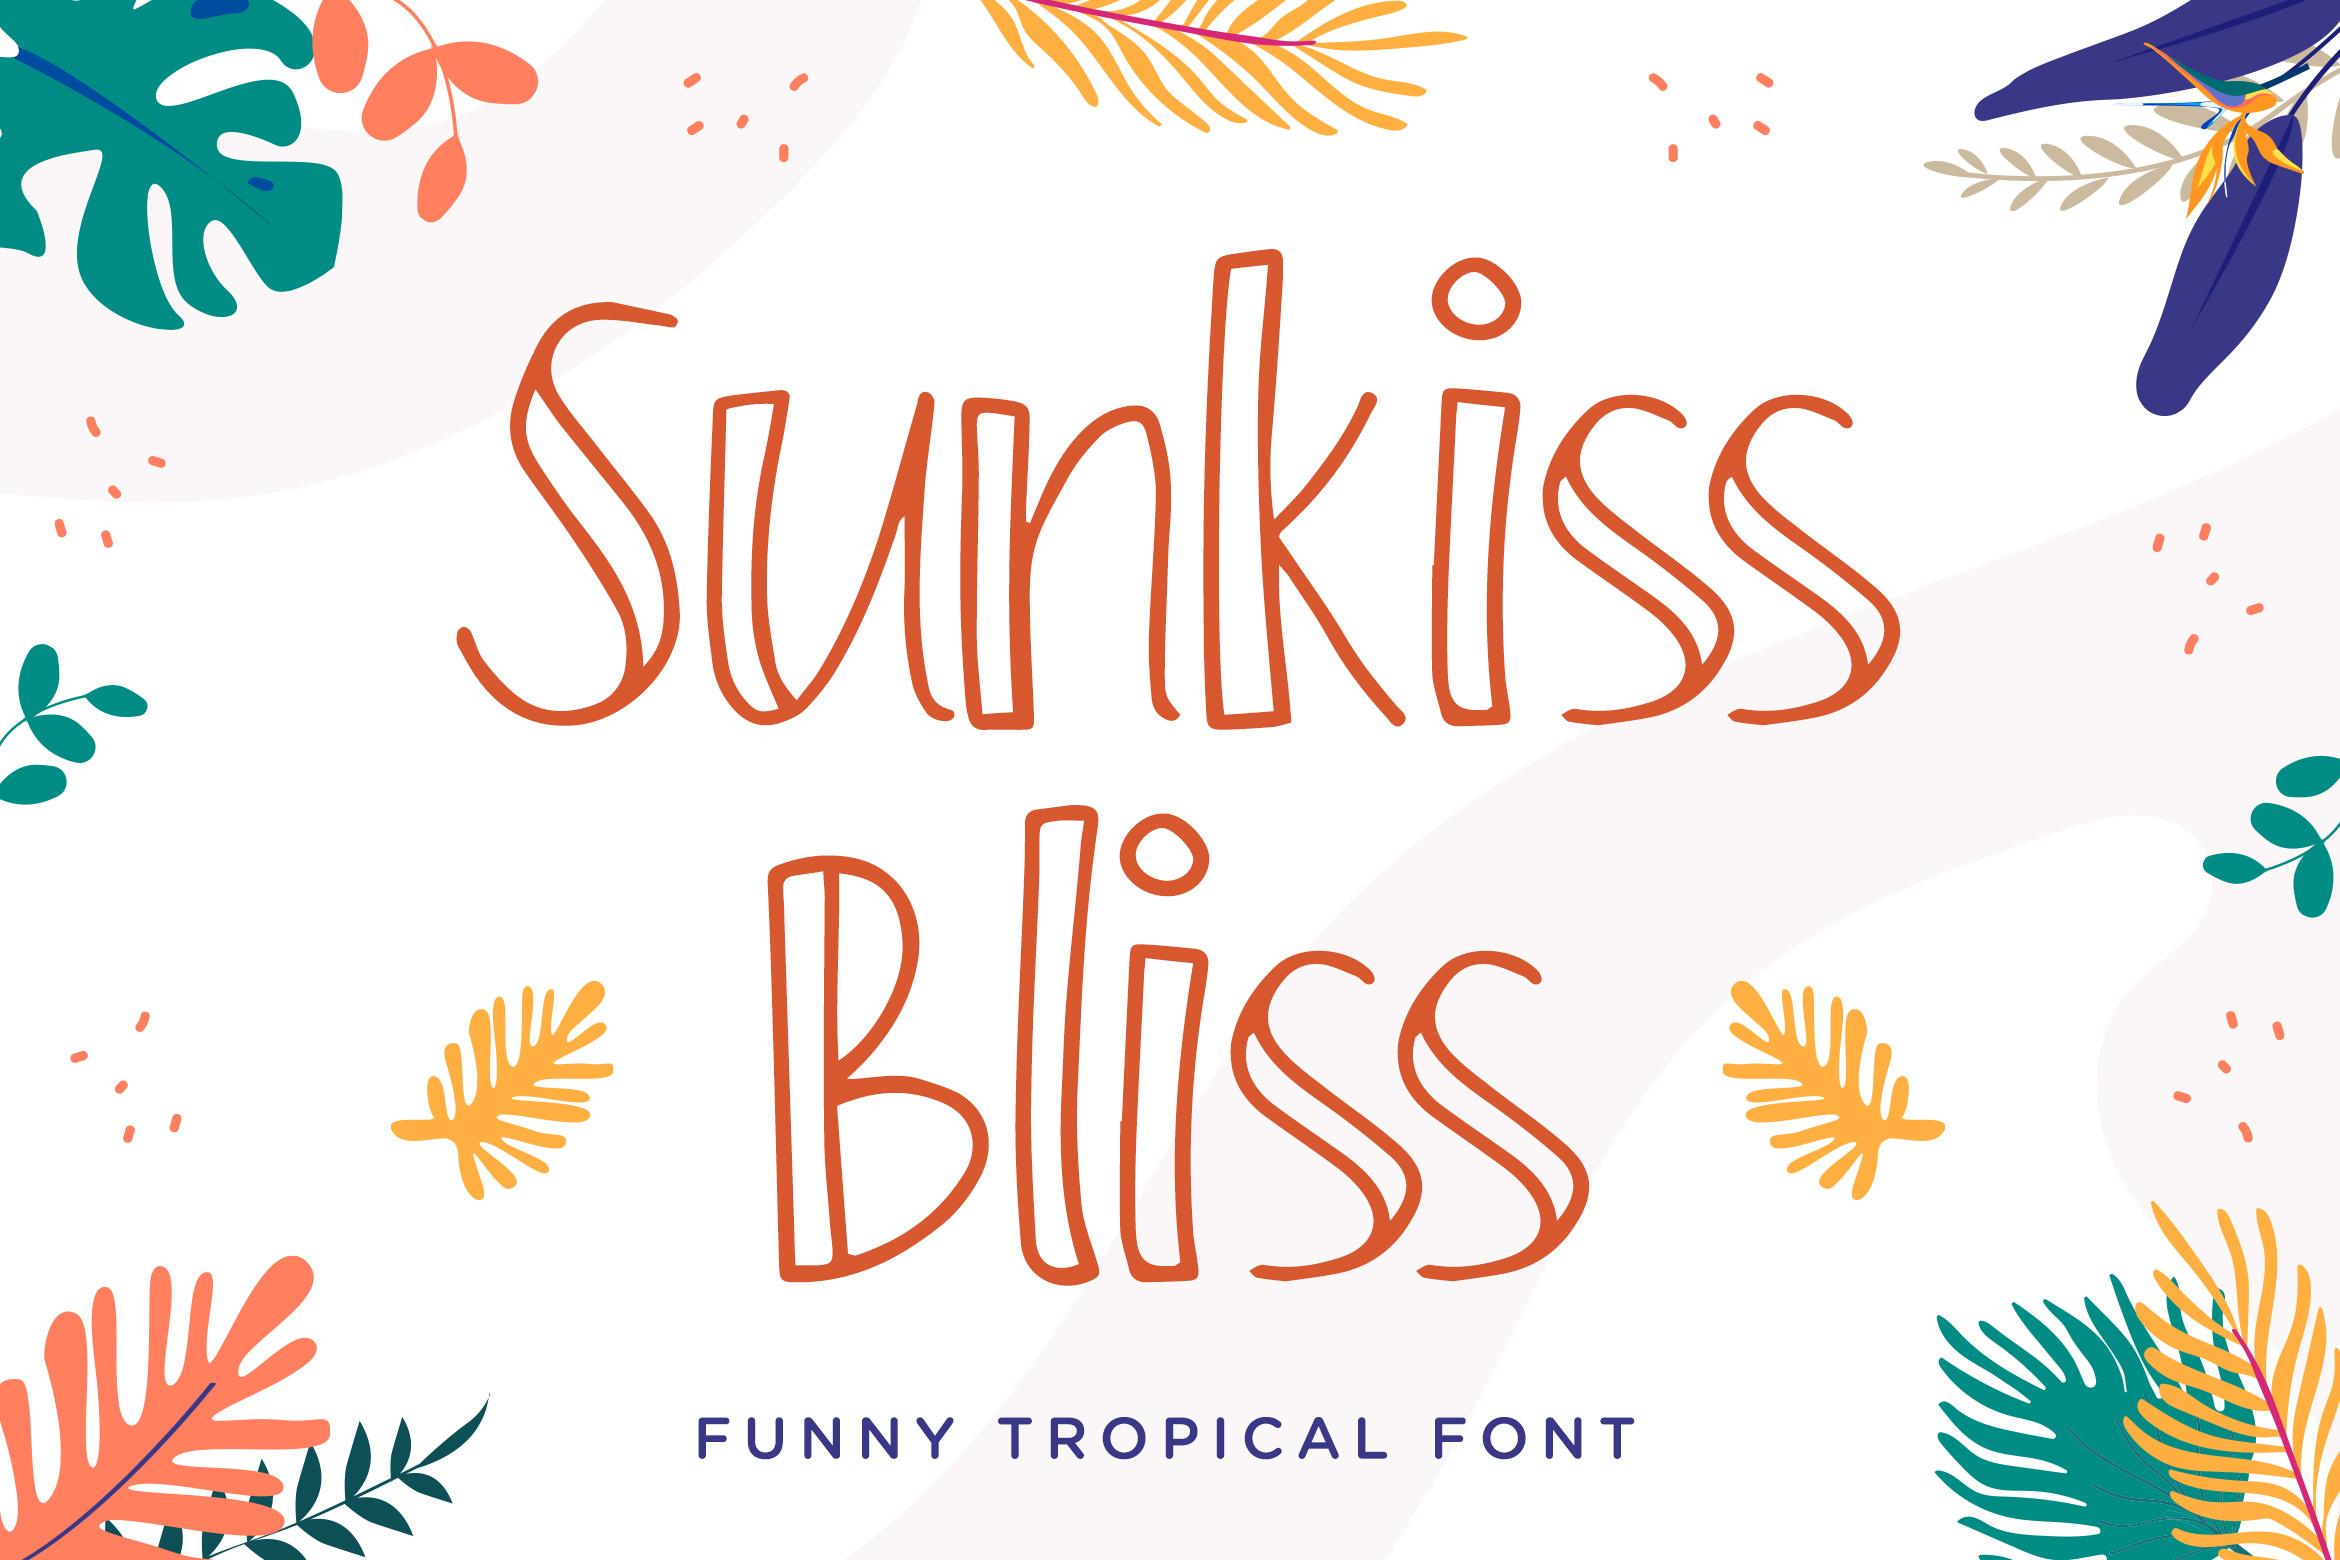 Sunkiss Bliss Font